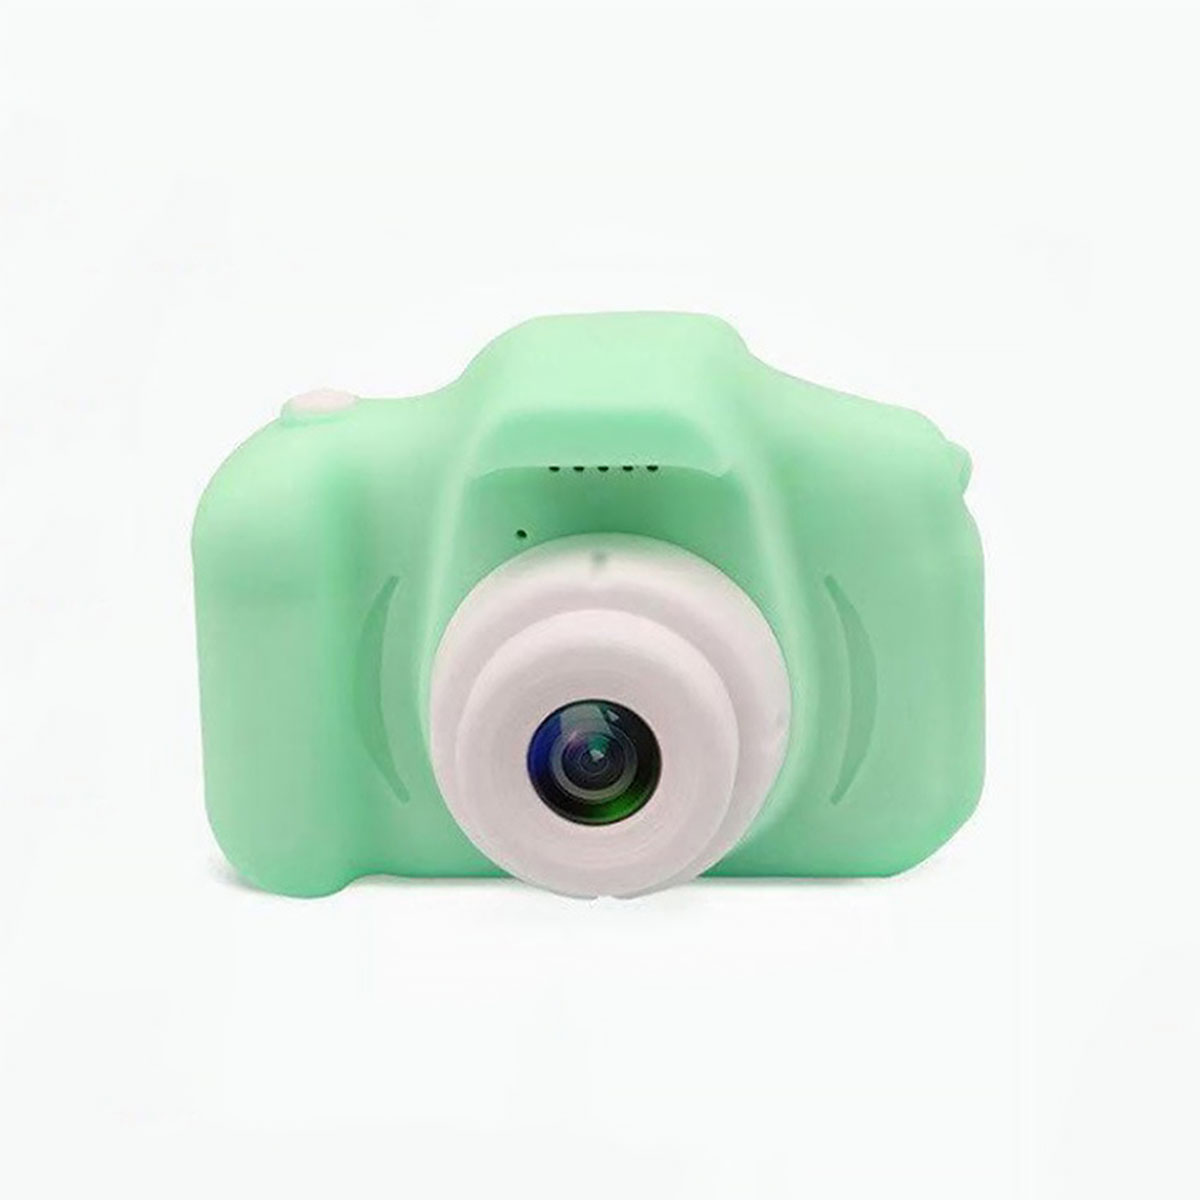 LCD- Kamera,mit Grüne Sofortbildkamera HD KINSI Kinderkamera 2.0-Zoll,Cartoon-Aufkleber,1080P DSLR-Kamera, 32GB,USB Kinder